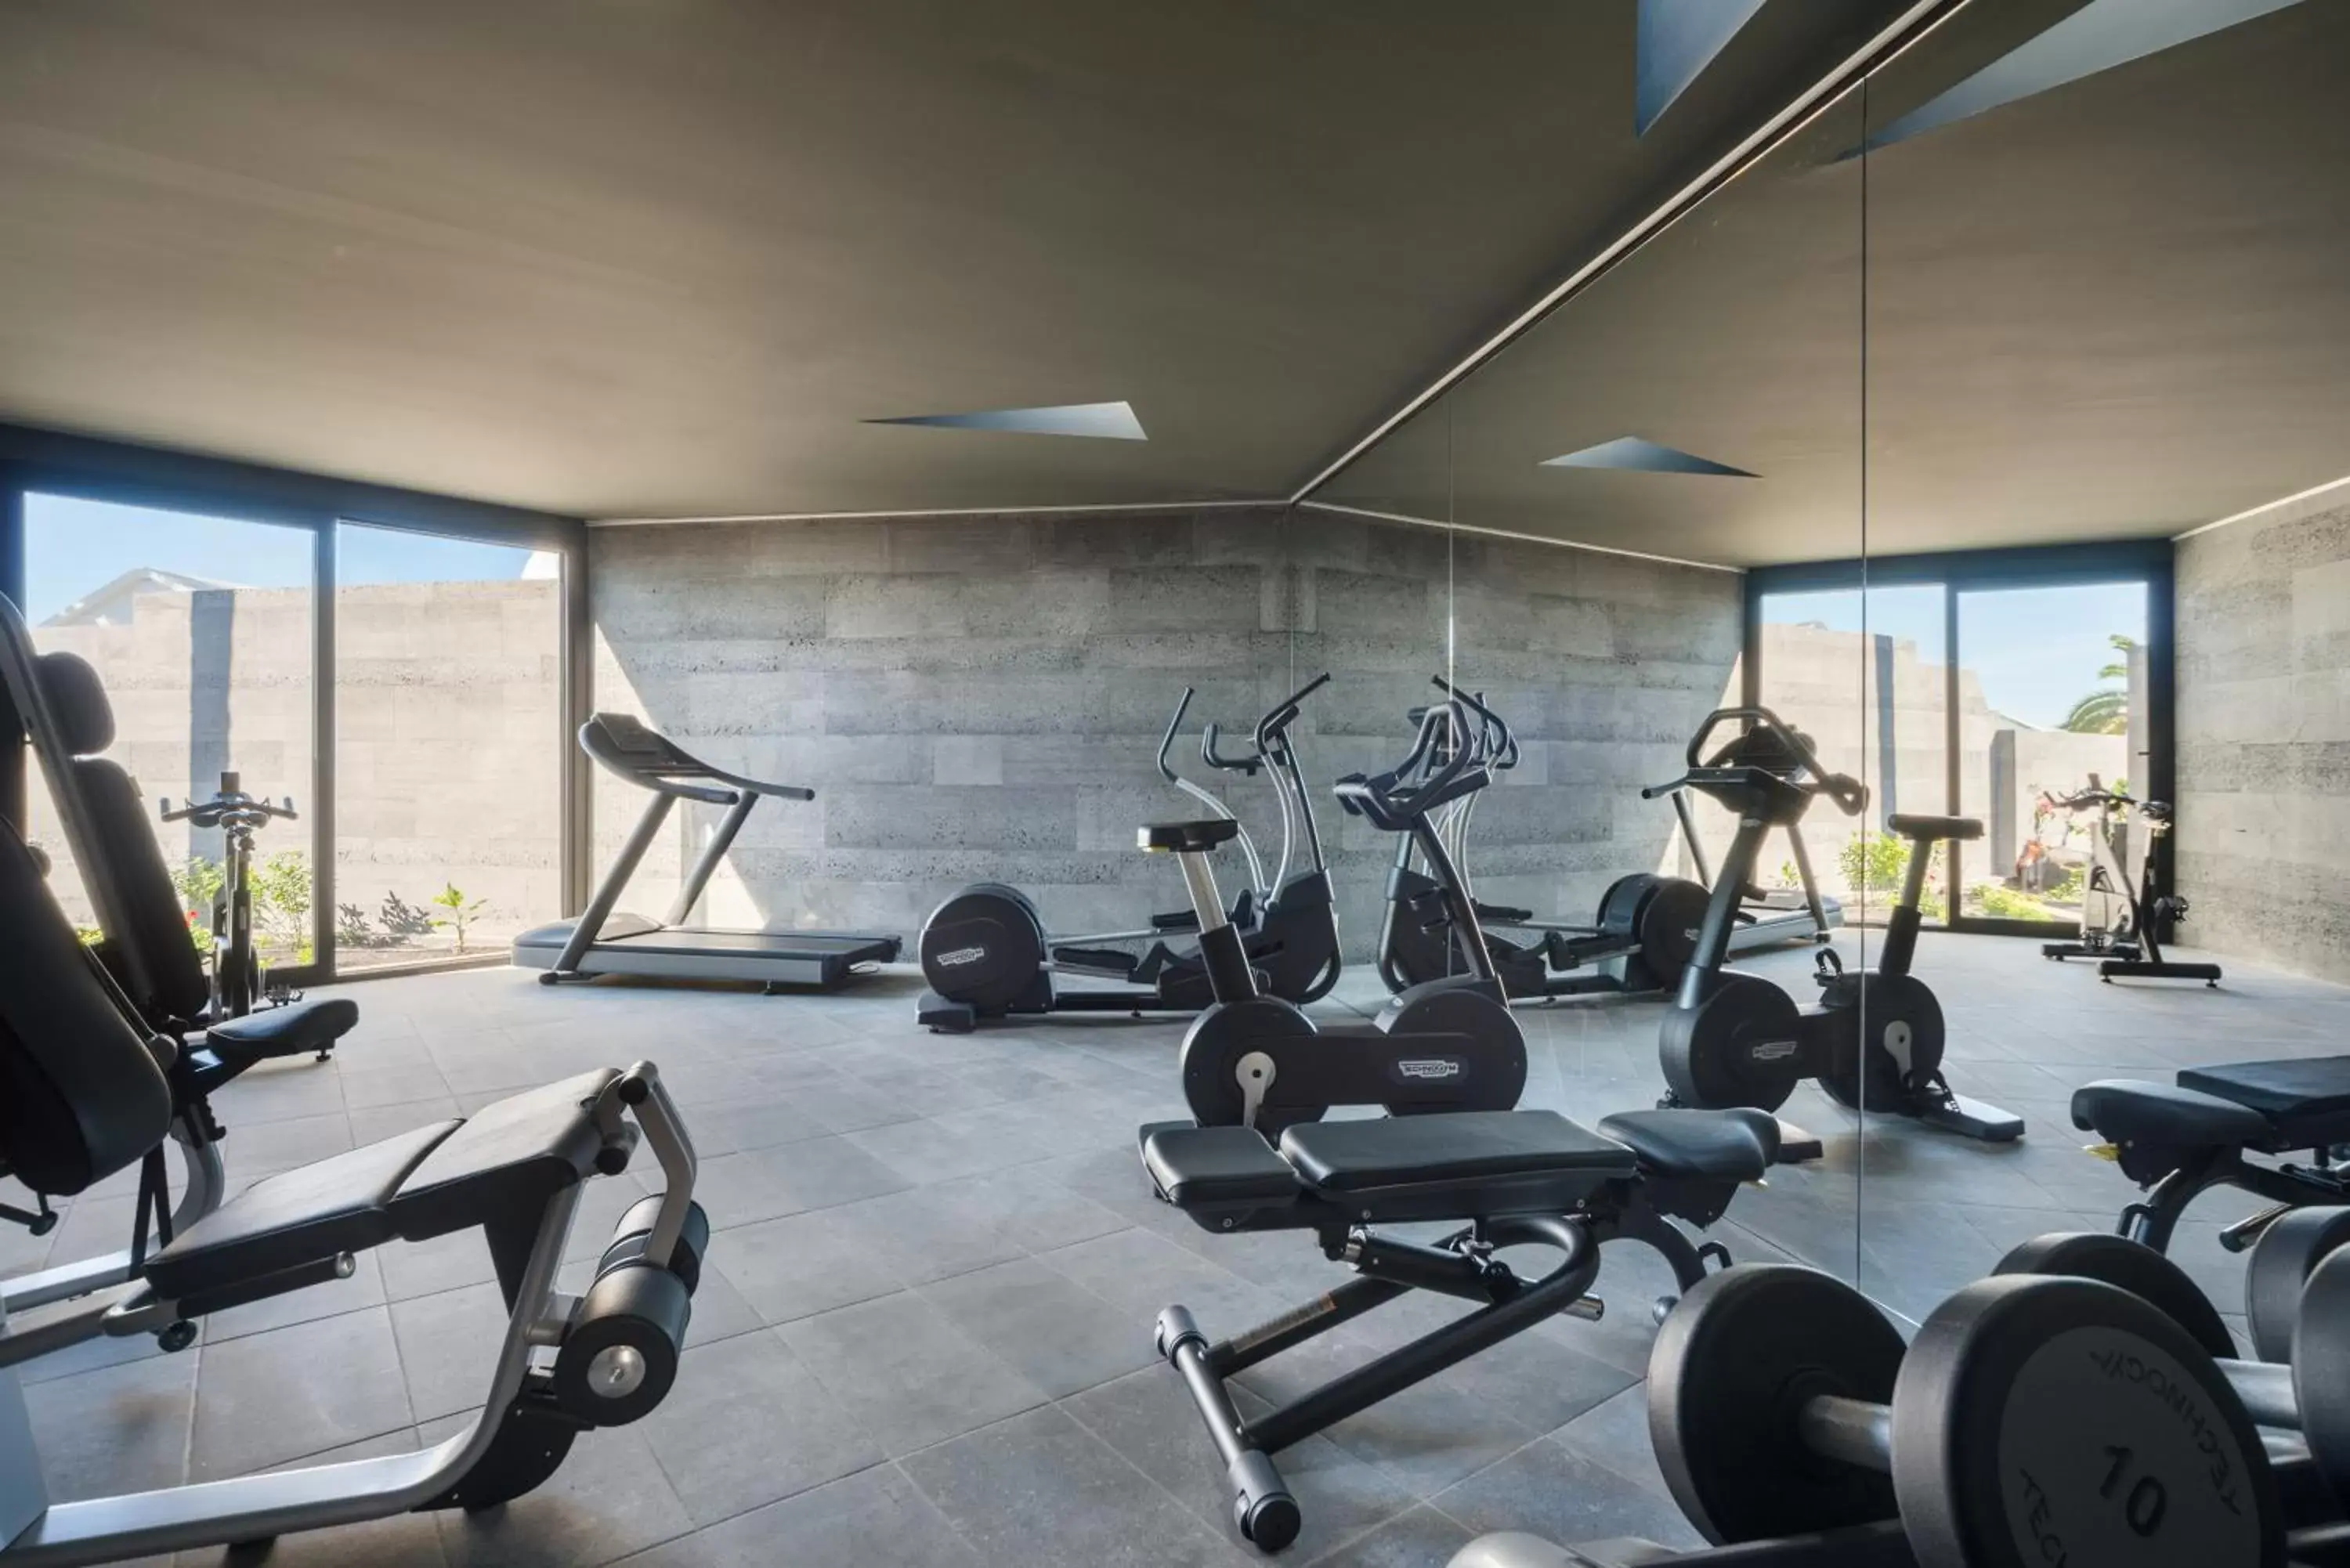 Fitness centre/facilities, Fitness Center/Facilities in La Isla y el Mar, Hotel Boutique